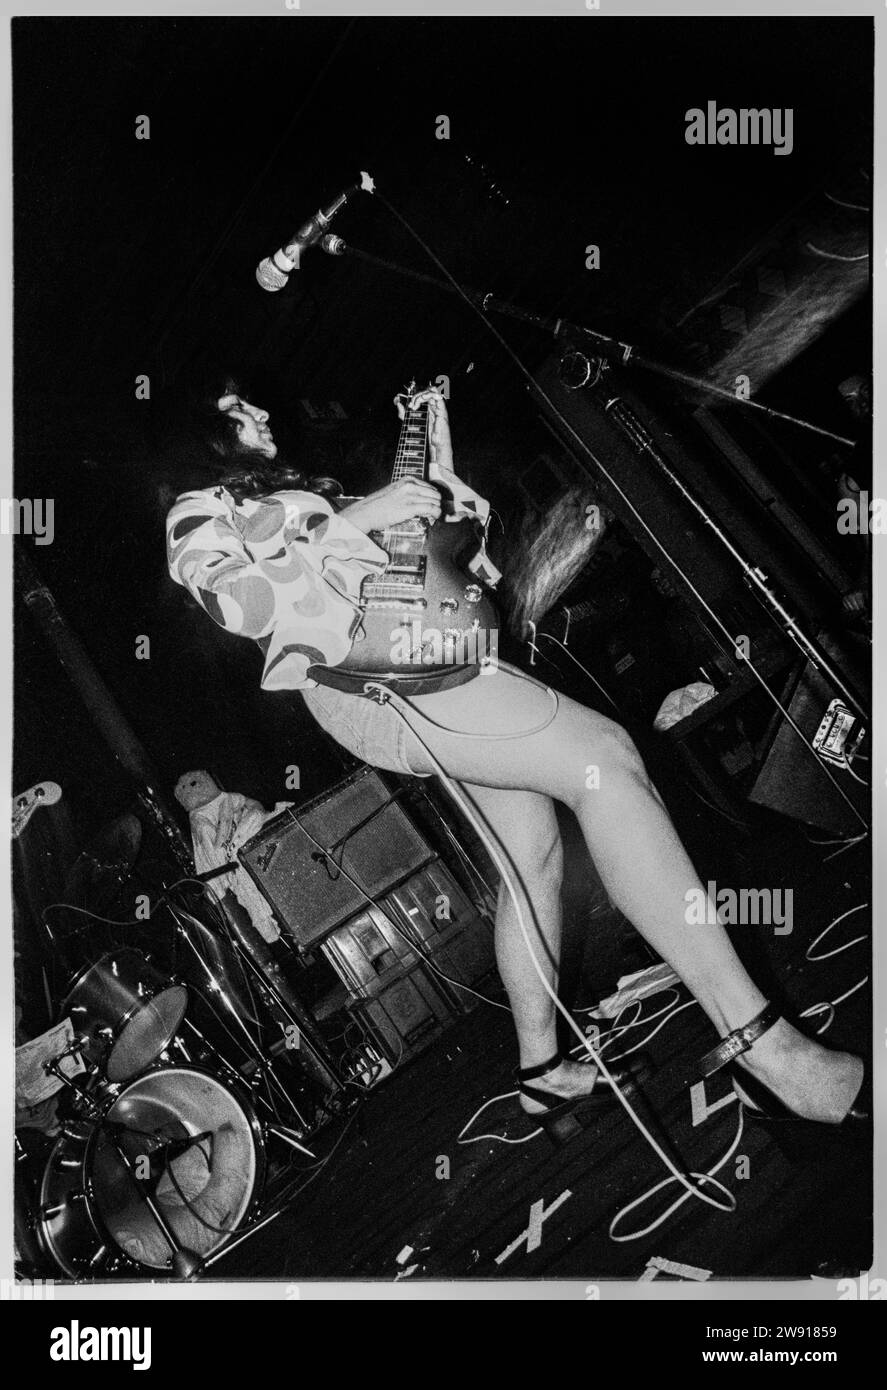 VOODOO QUEENS, BRISTOL FLEECE, 1993: El cantante y guitarrista Anjali Bhatia de The Voodoo Queens tocan Bristol Fleece y Firkin en Bristol, Inglaterra, Reino Unido el 28 de julio de 1993. Foto: Rob Watkins. INFORMACIÓN DE LA BANDA: The Voodoo Queens, una banda británica de indie punk formada a principios de los 90, fue dirigida por Anjali Bhatia. Su música enérgica y feminista, incluyendo el riotous single 'Supermodel-superficial', trajo una mezcla única de punk y pop, convirtiéndolos en una presencia notable en la escena de música alternativa de Riot Grrrl. Foto de stock